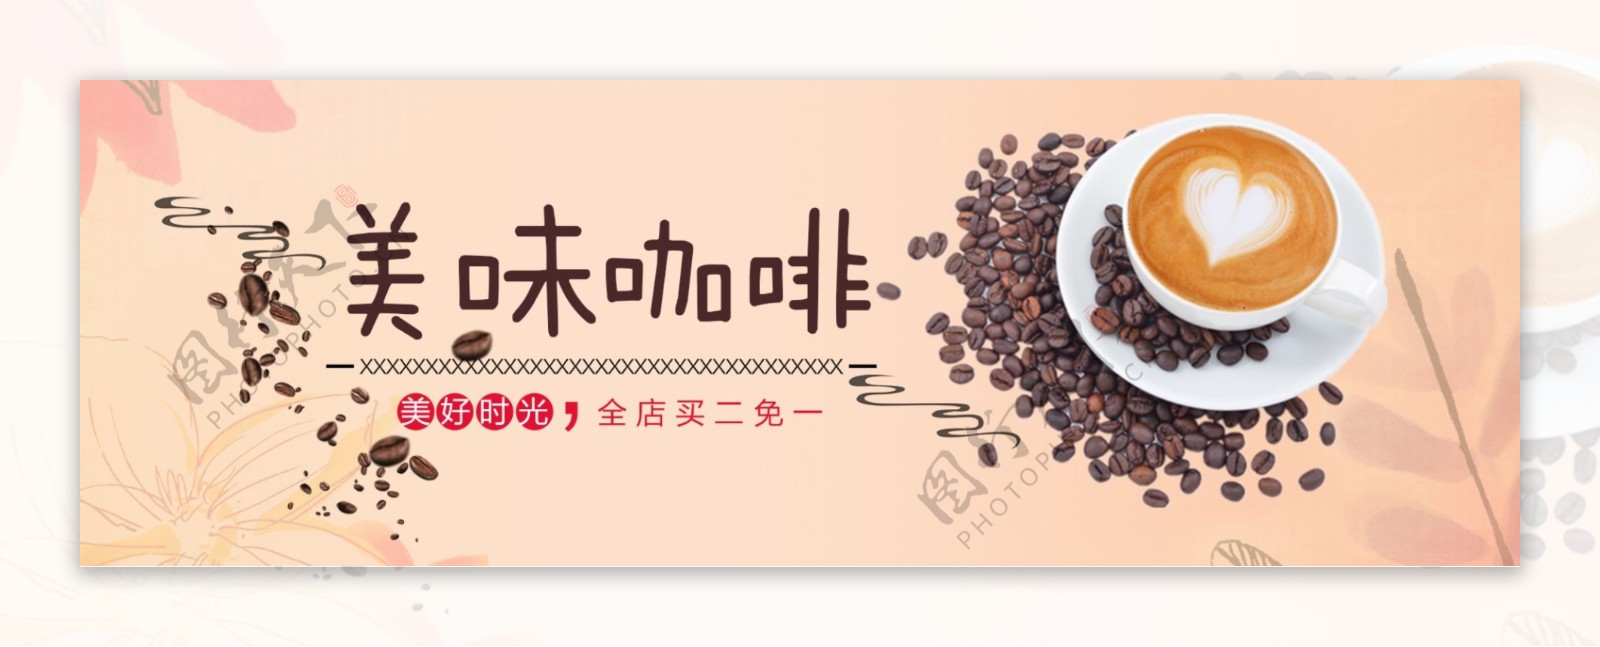 浅色温馨咖啡美味淘宝电商banner